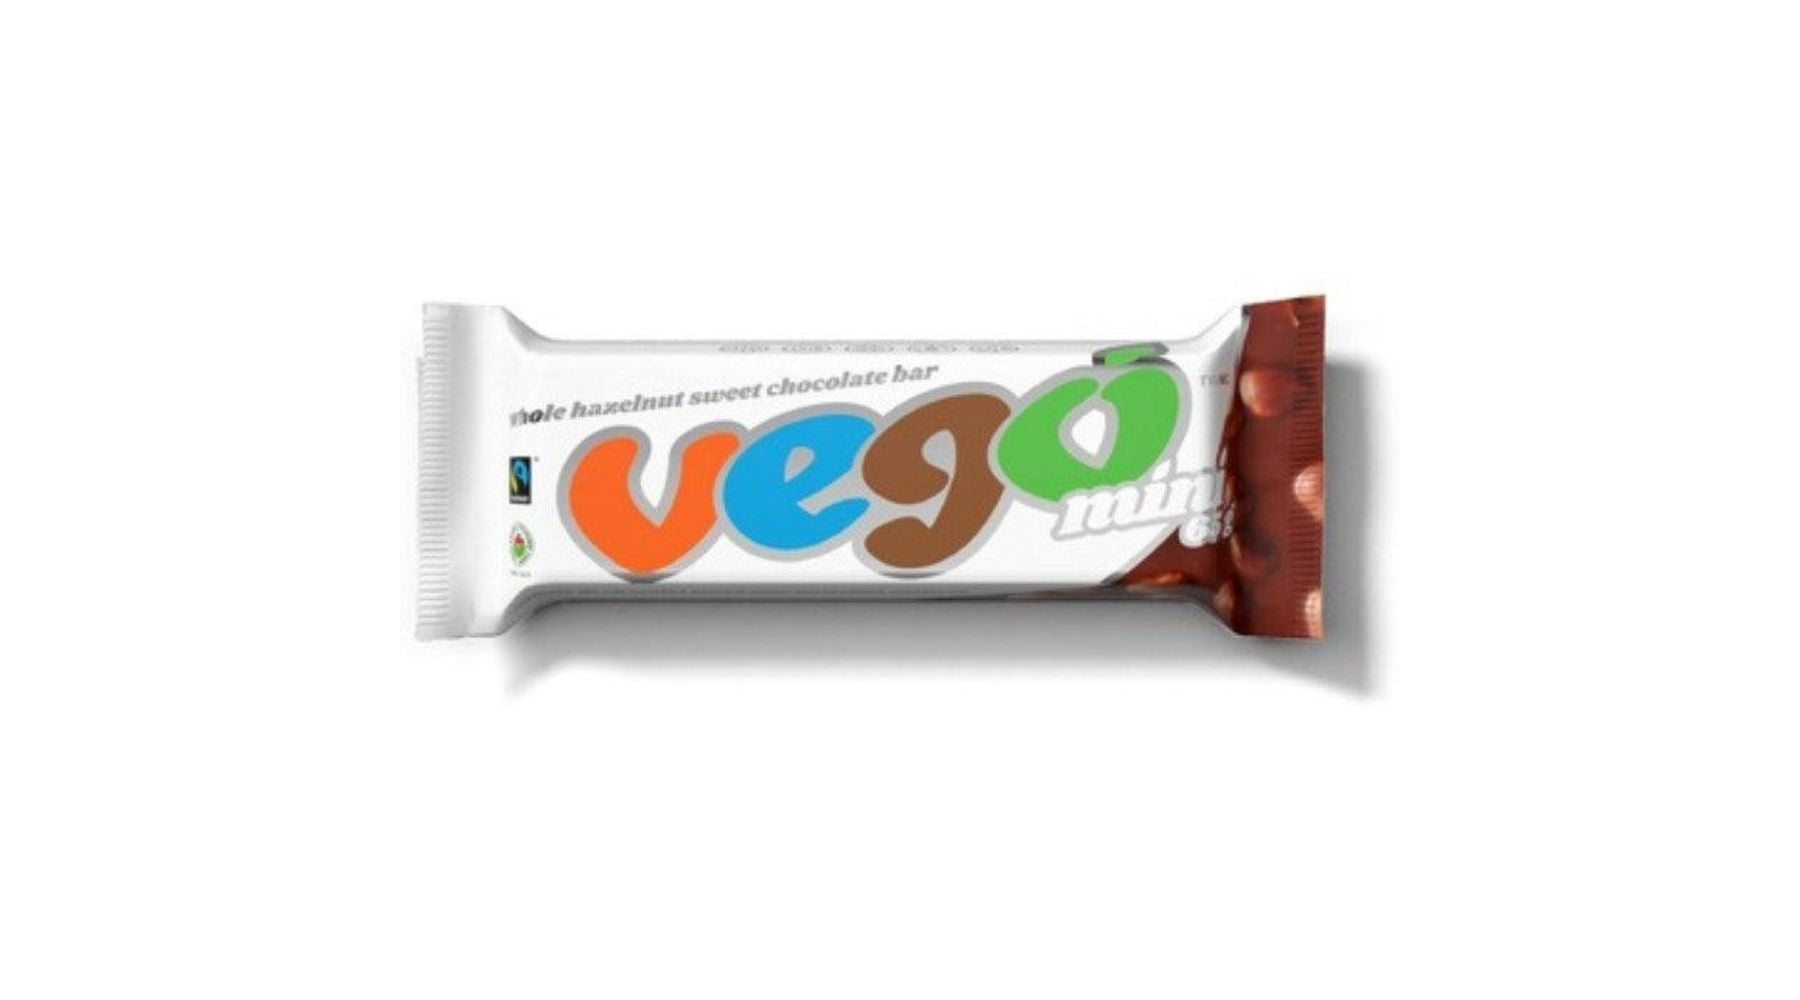 Vego - Whole Hazelnut Chocolate Bar, 65g